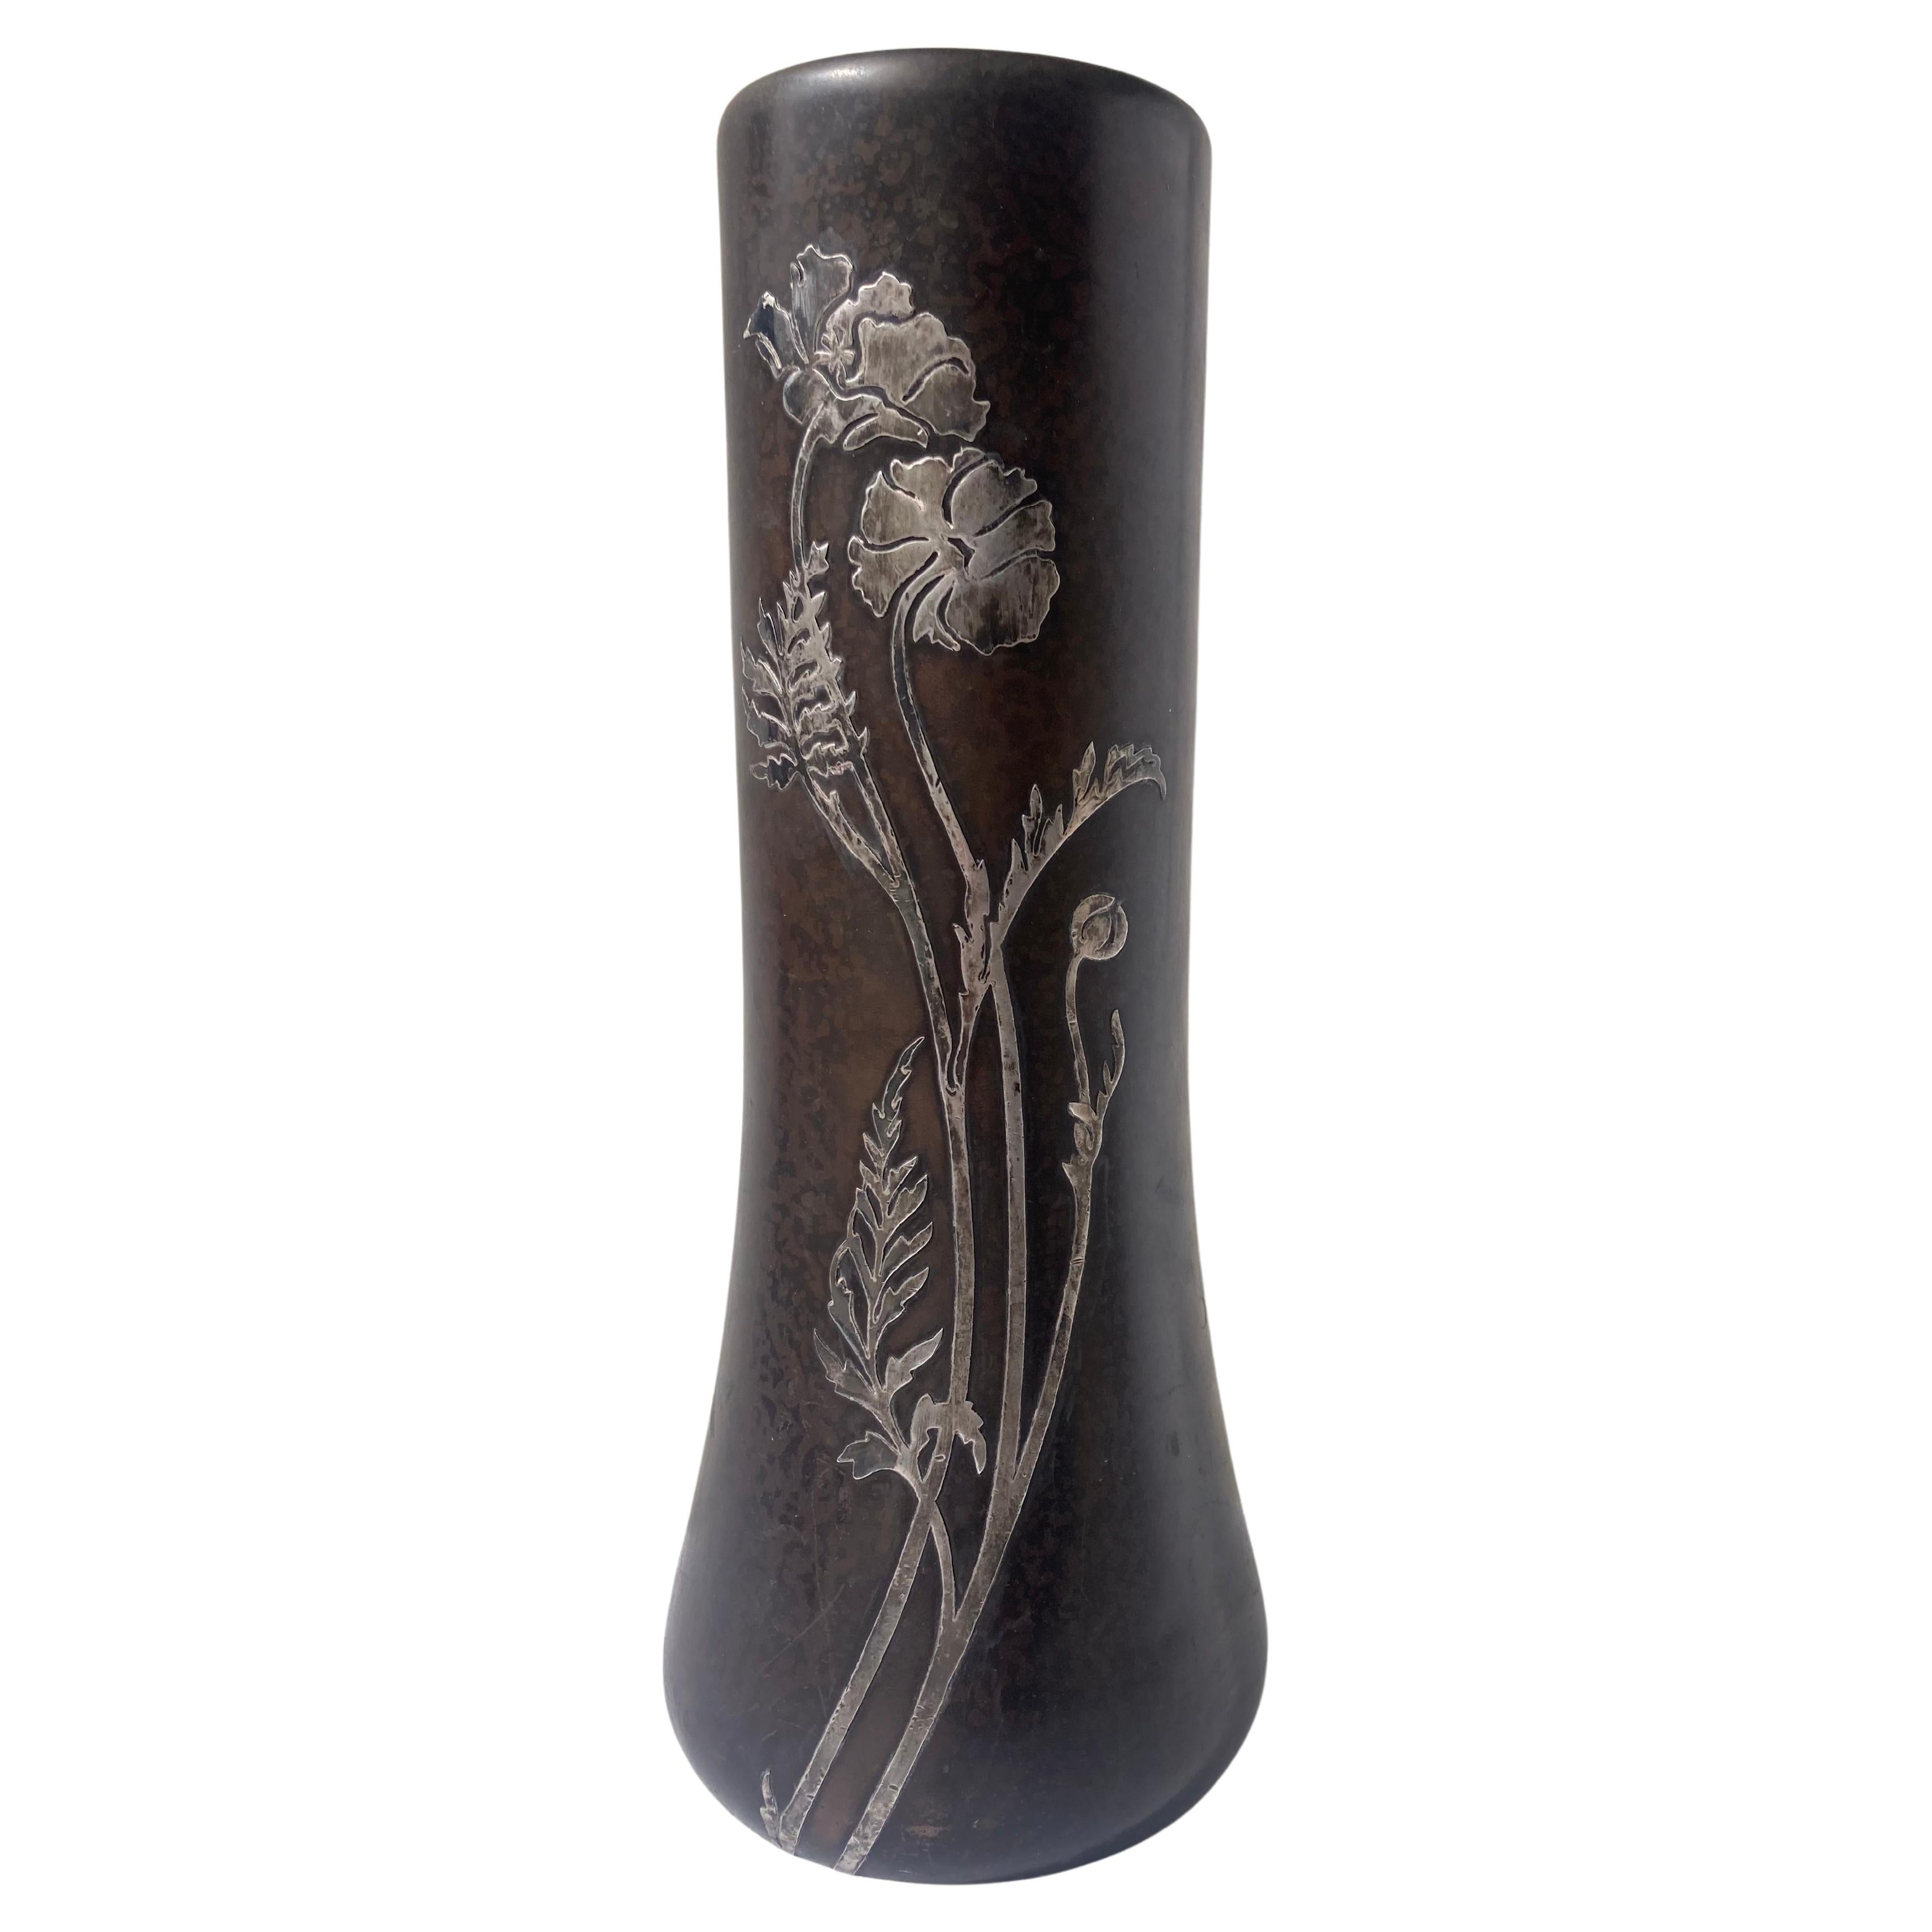 Heintz sterling silver overlay on bronze Arts & Crafts vase.